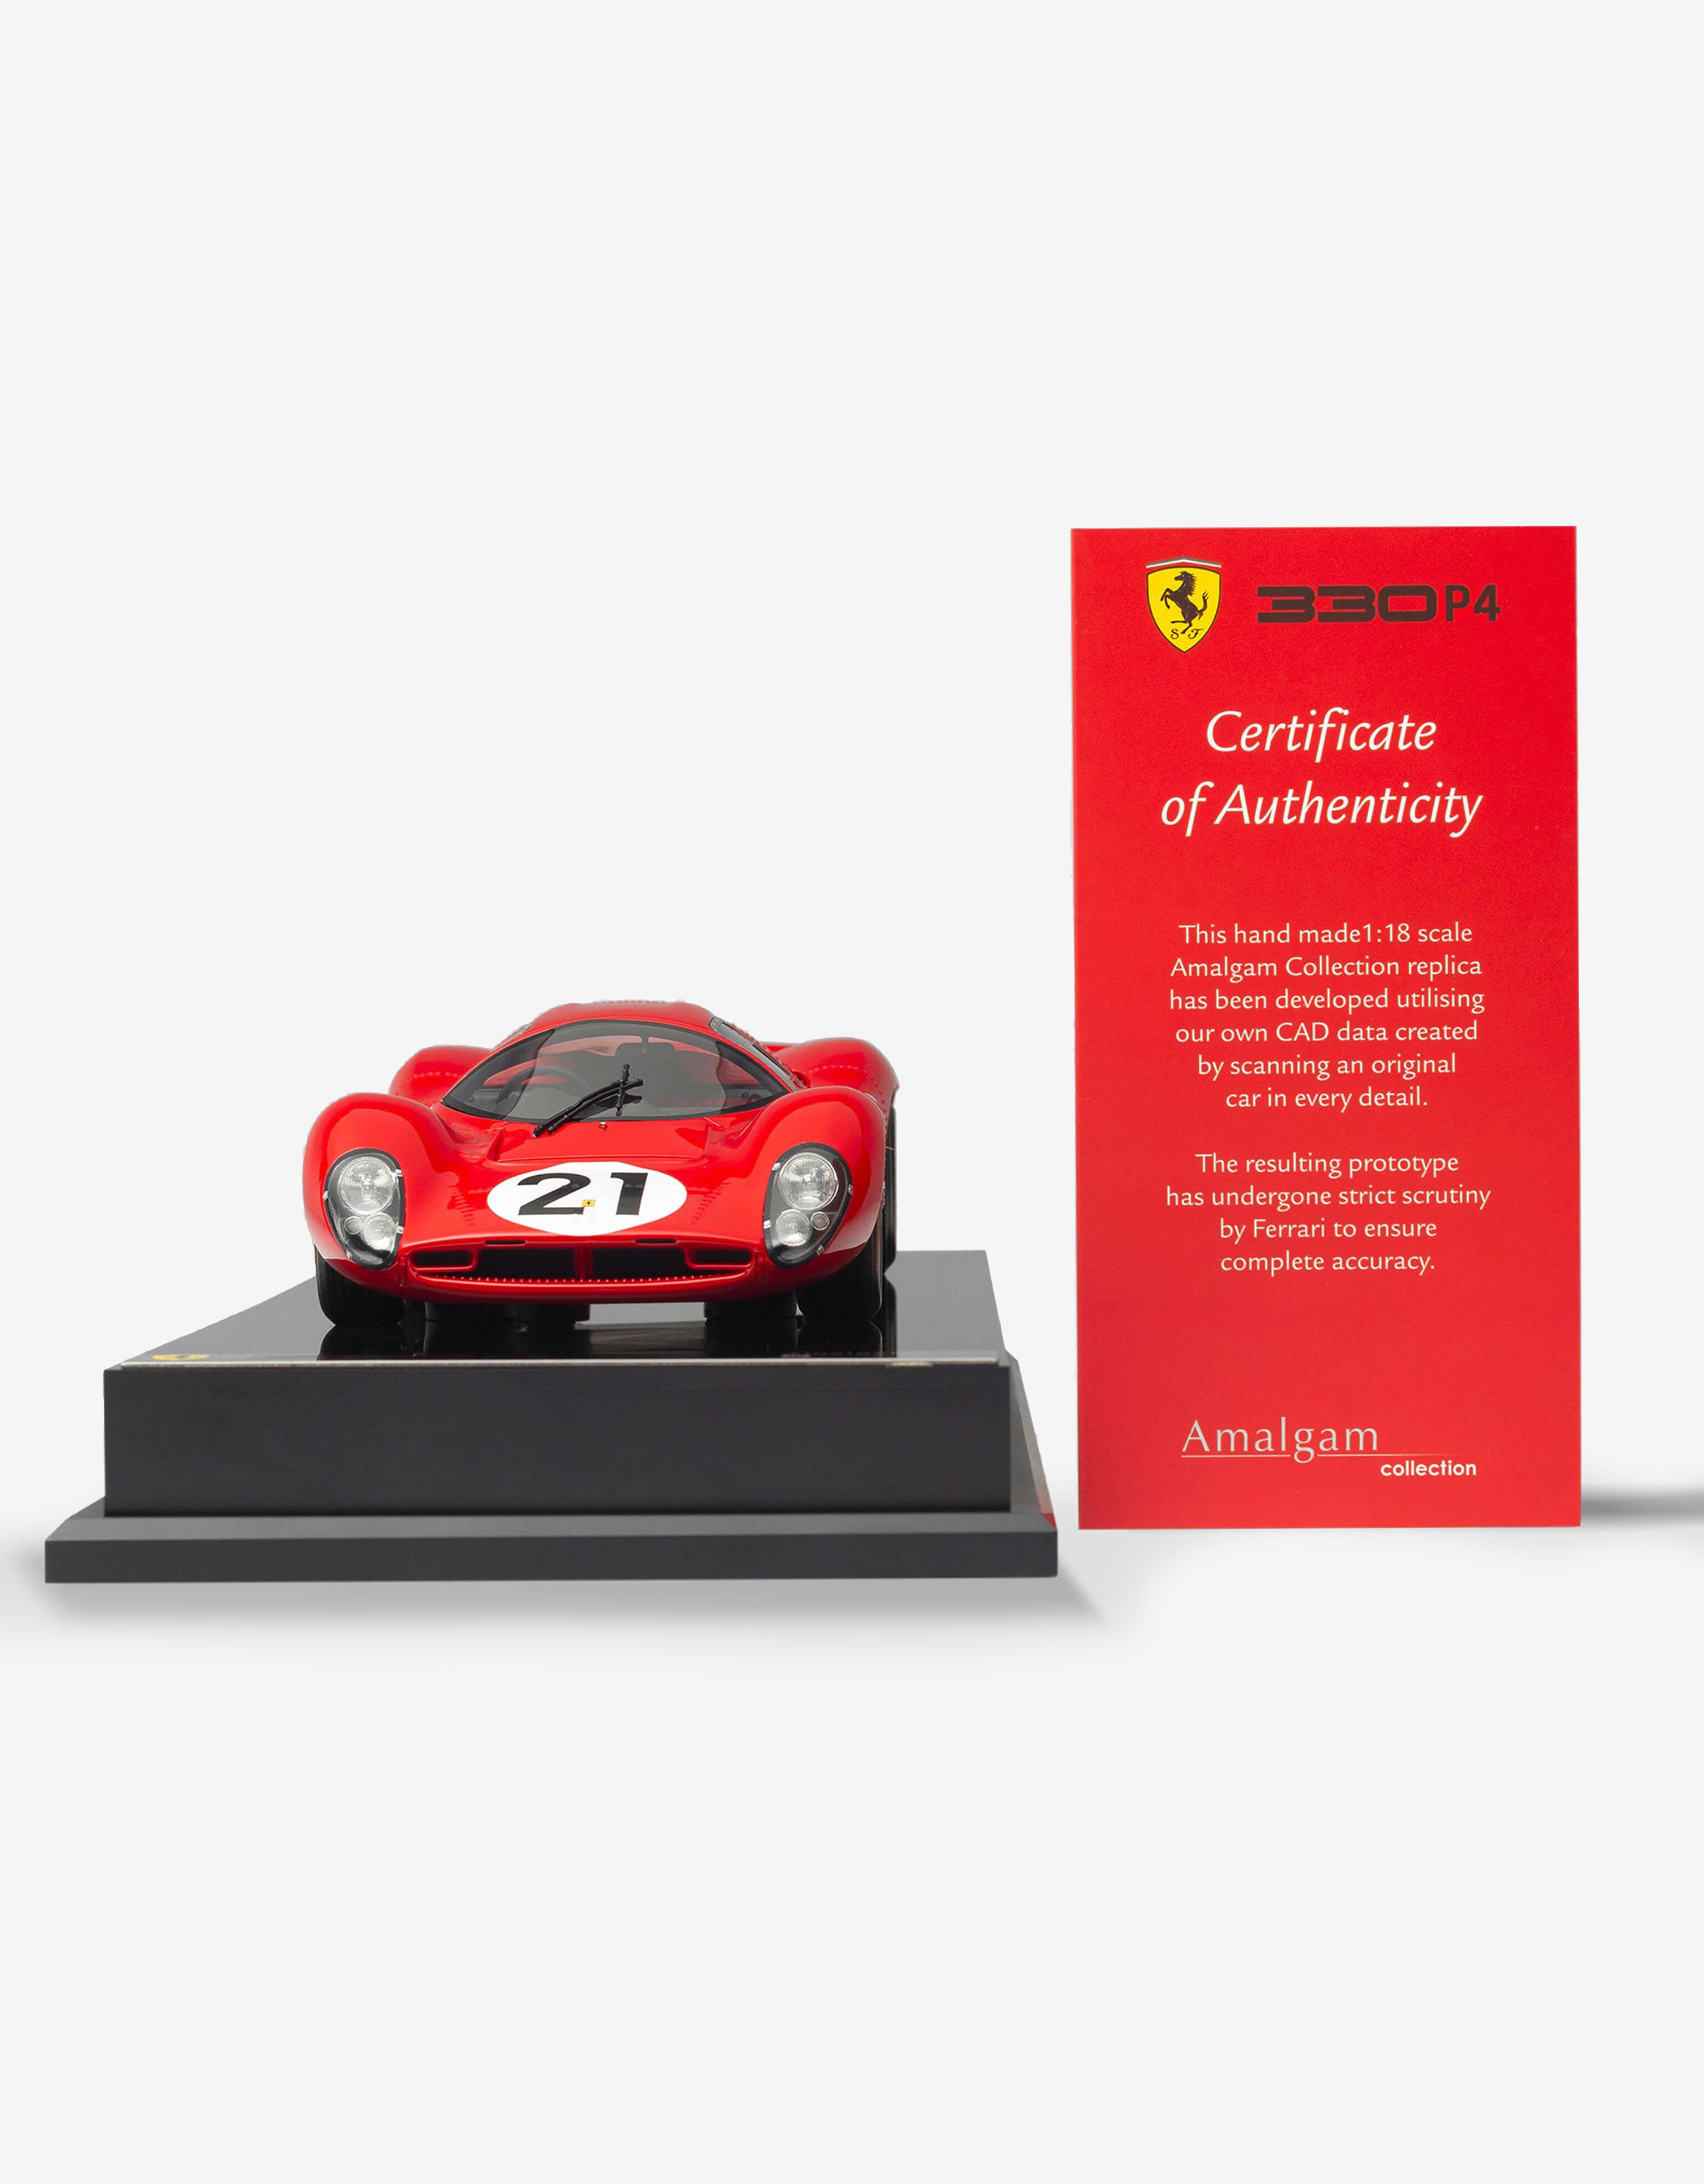 Ferrari Ferrari 330 P4 model in 1:18 scale 红色 L7588f